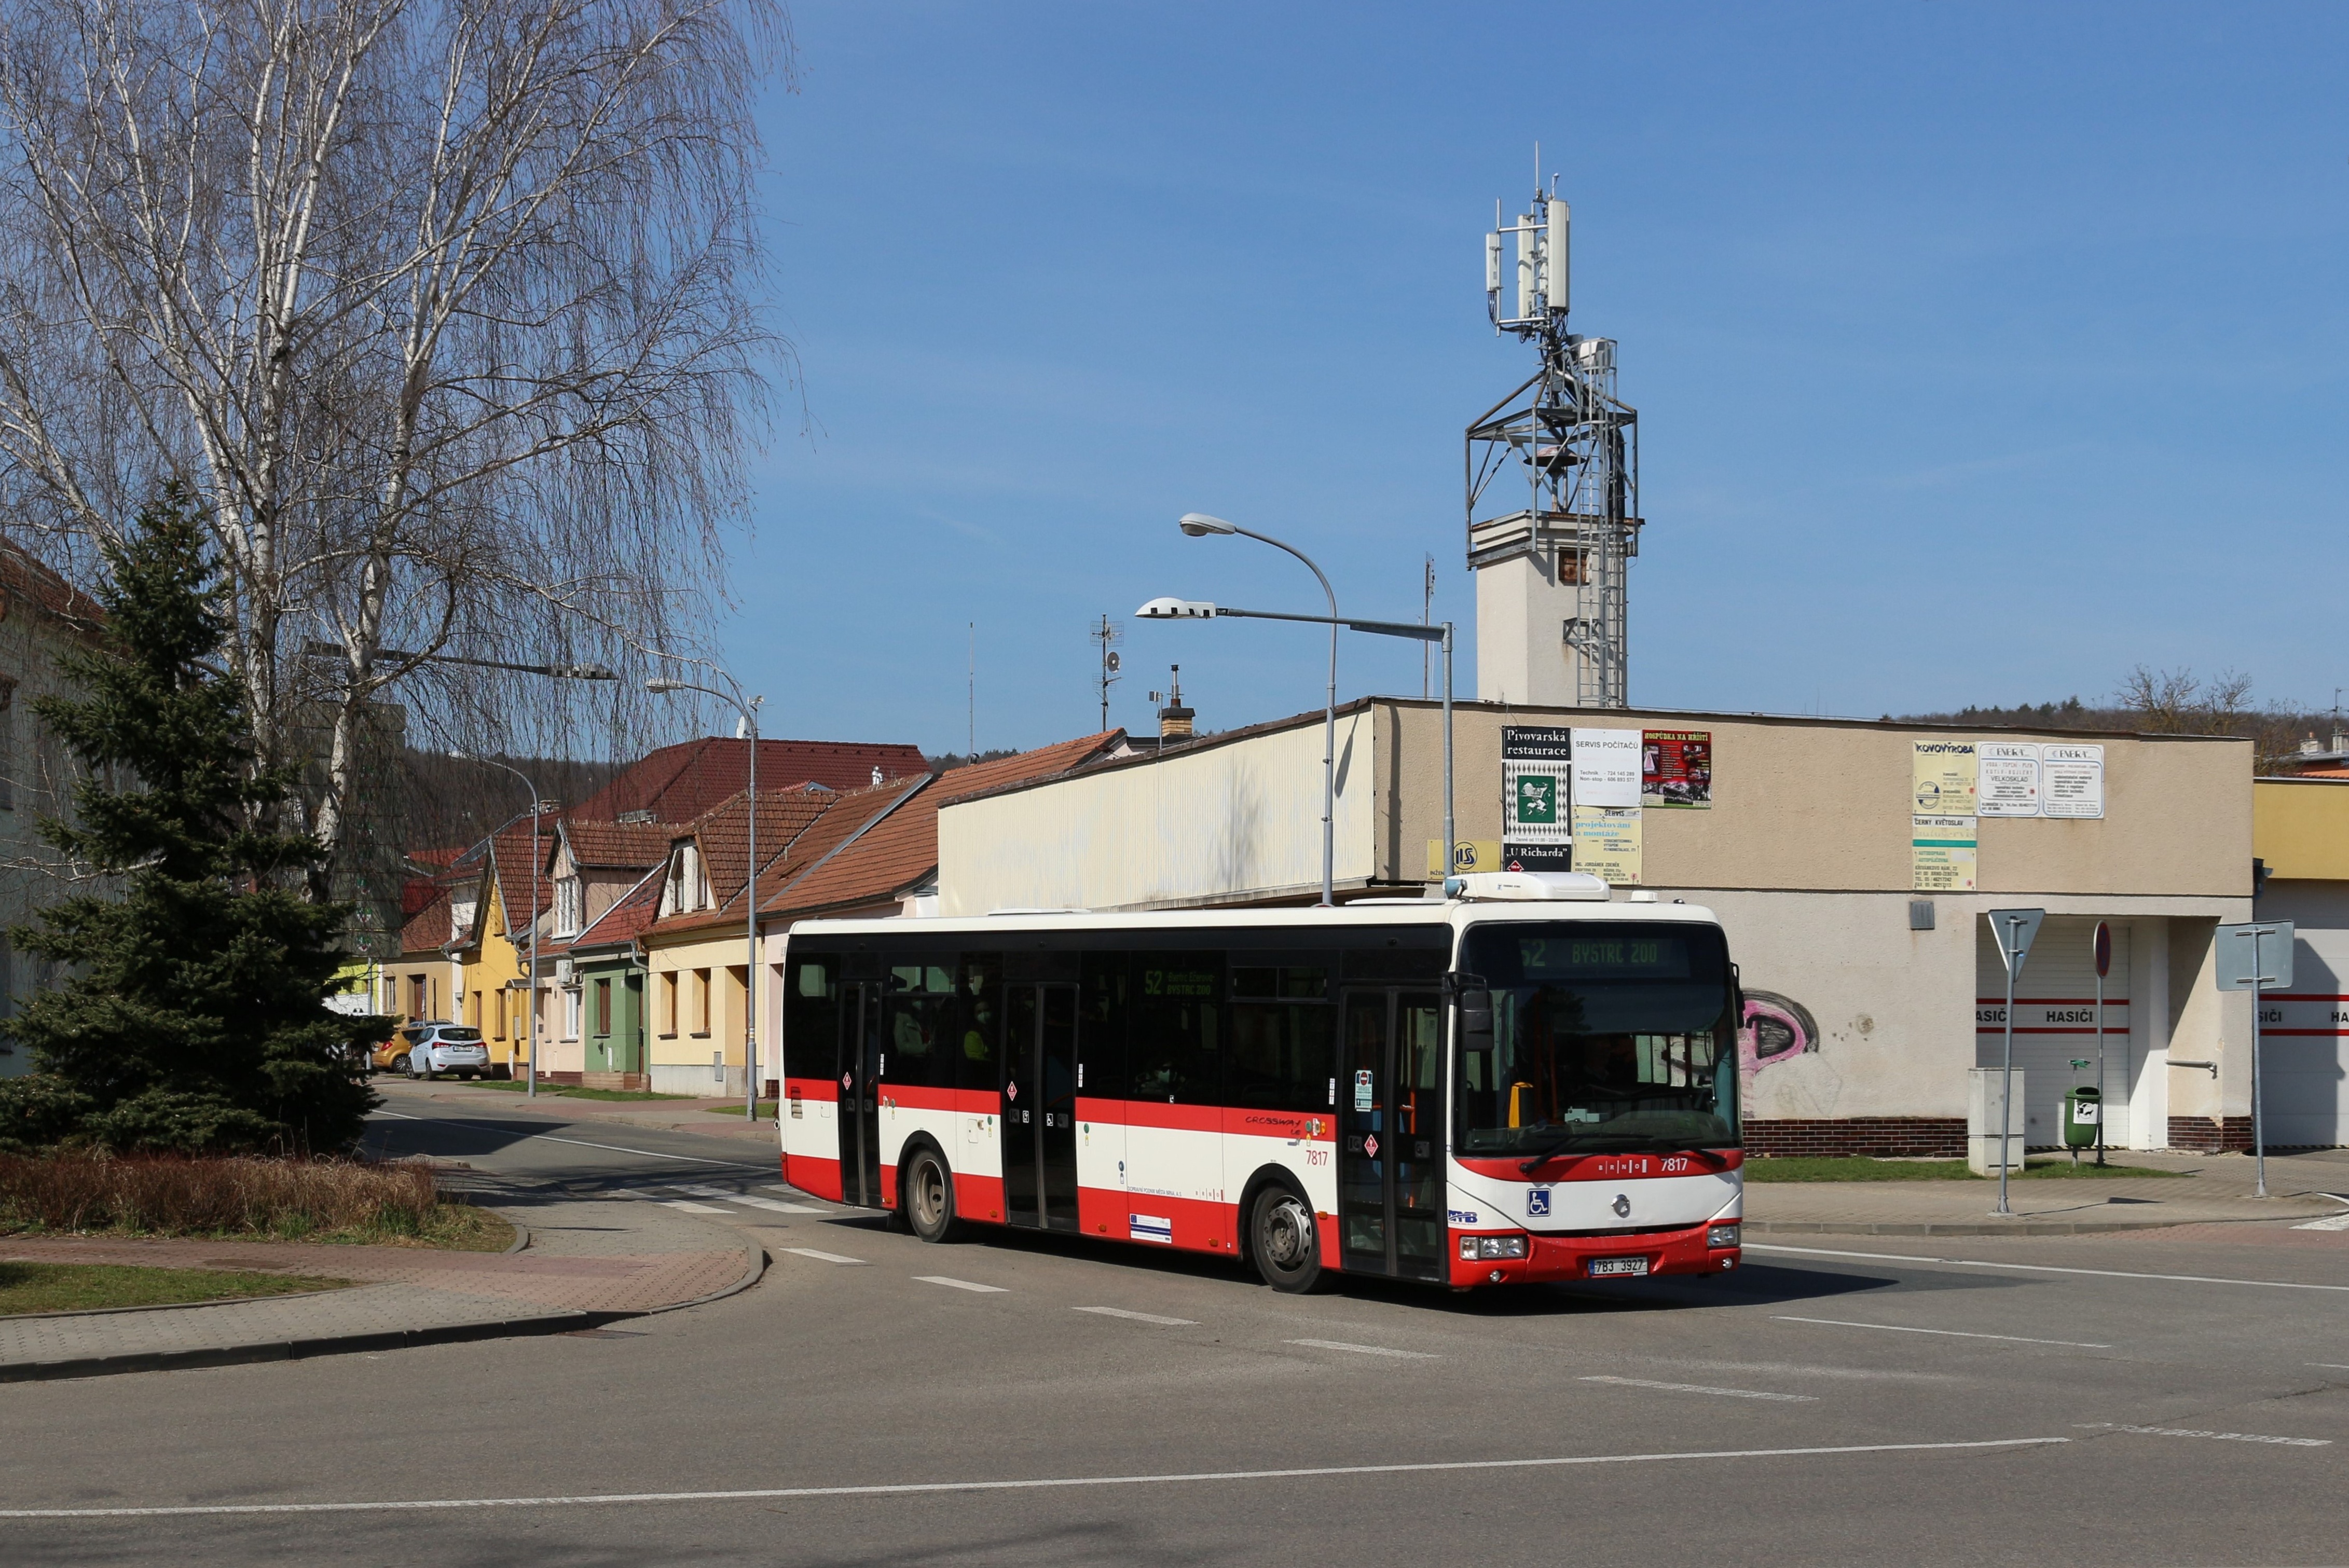 Brno, Irisbus Crossway LE 12M No. 7817